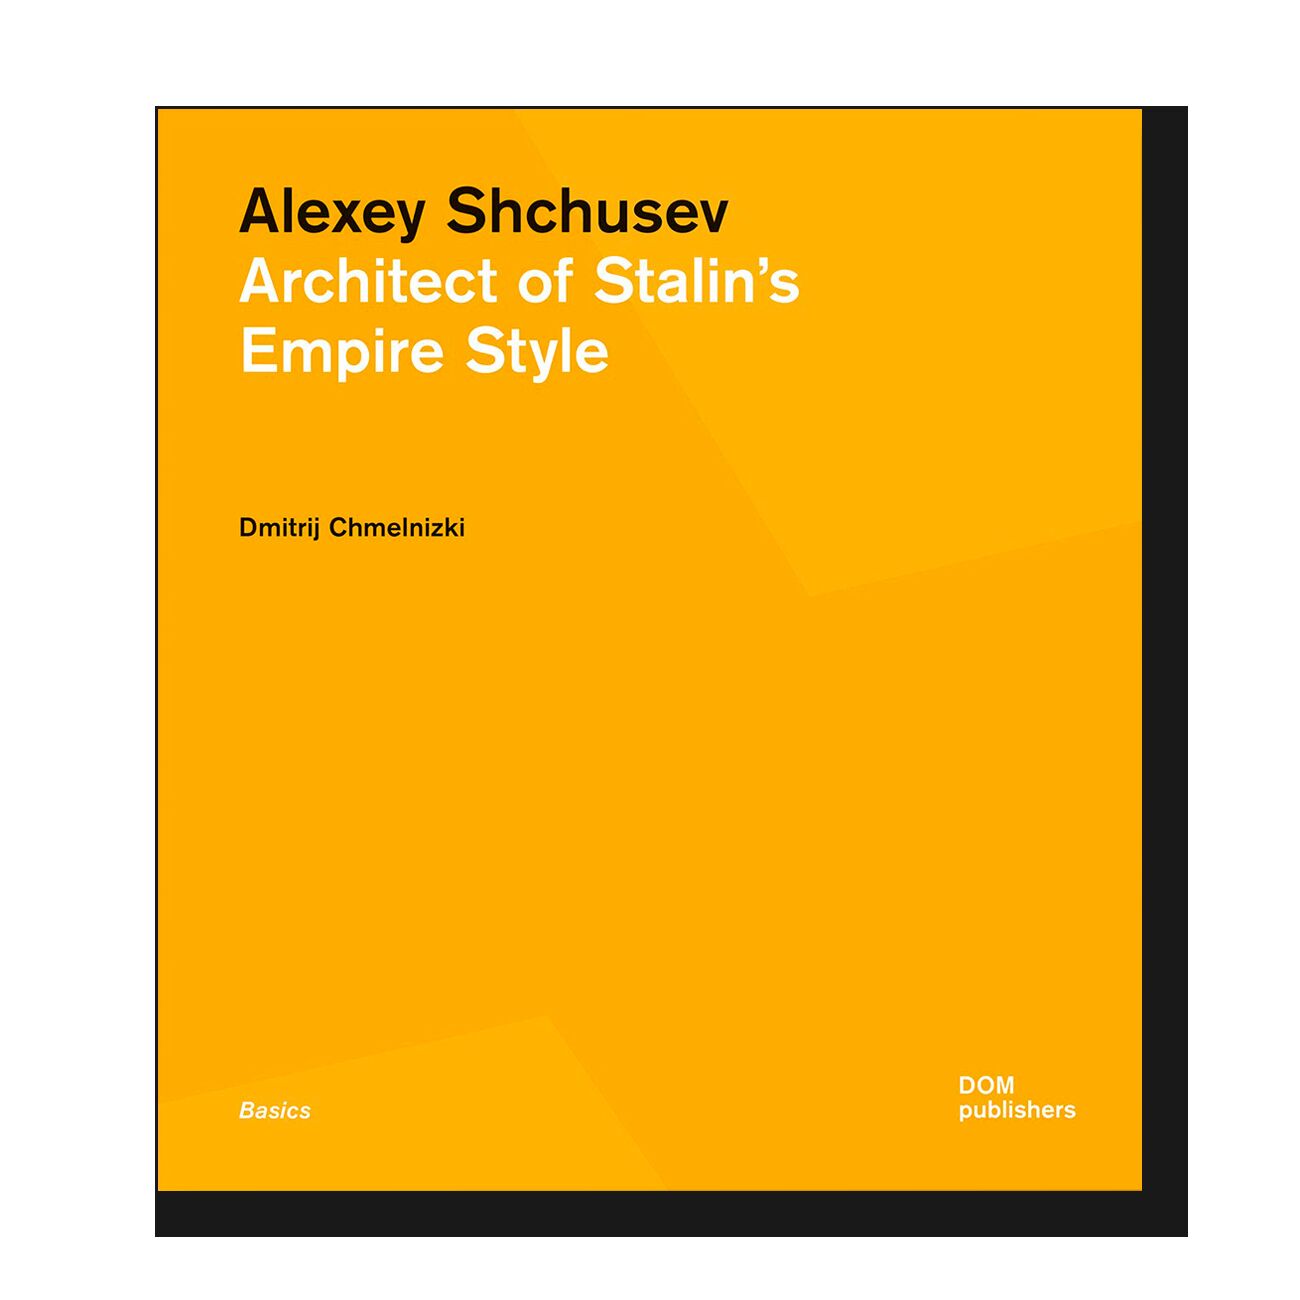 Alexey Shchusev: Architect of Stalin’s Empire Style